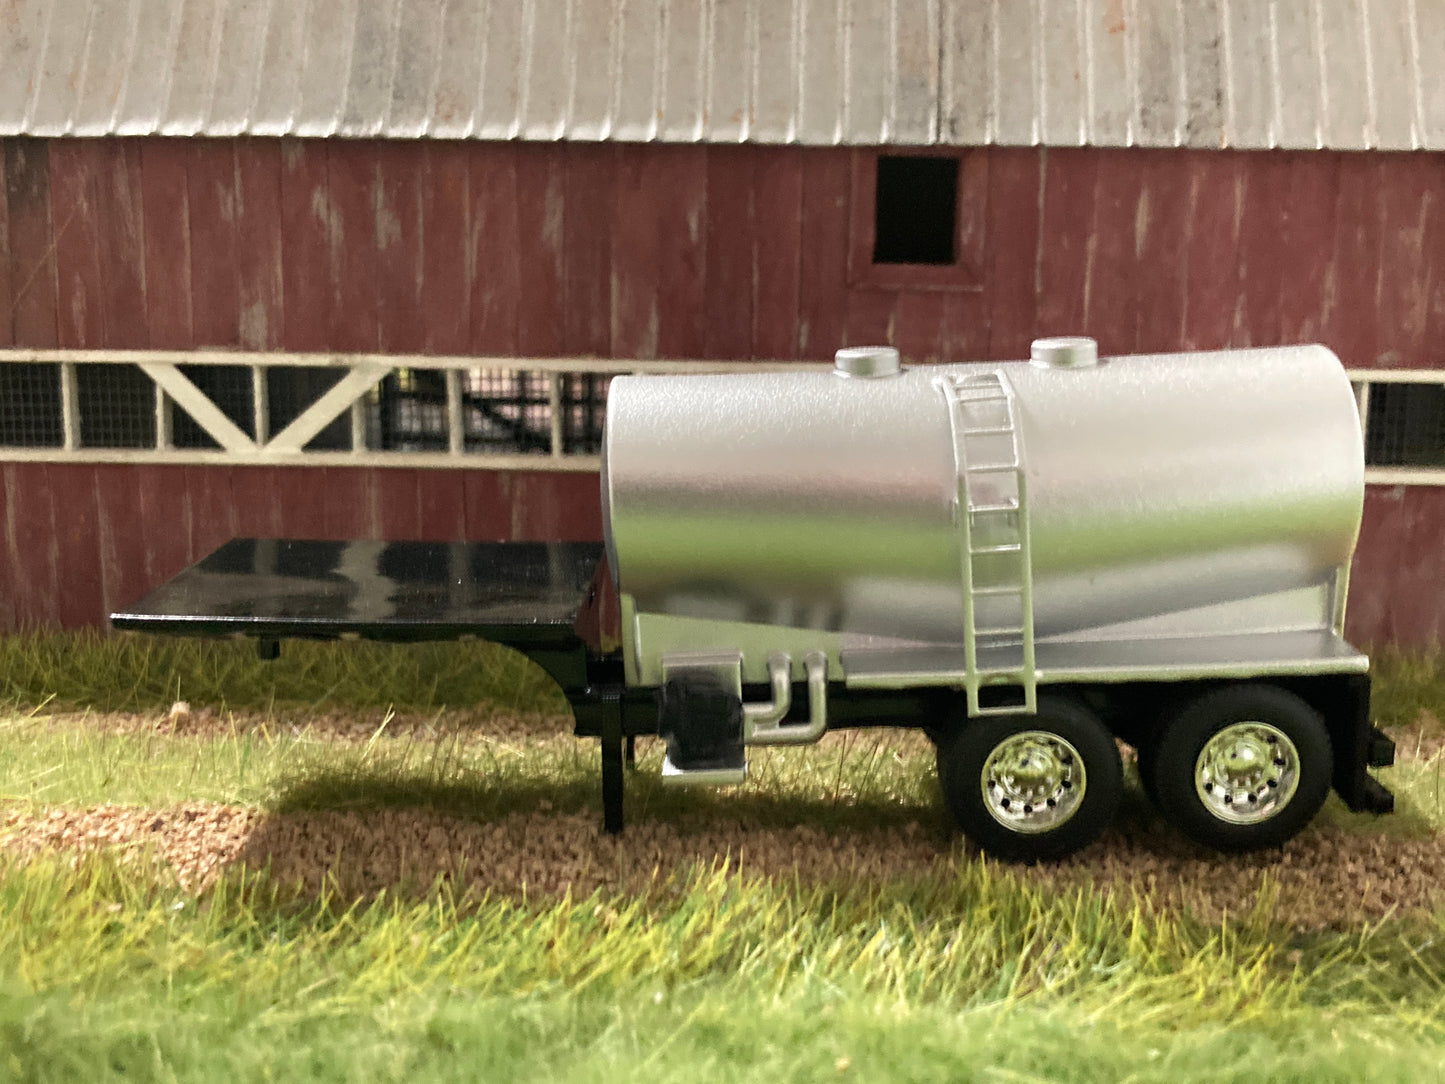 1/64 Liquid Fertilizer Tender Trailer 3,250 gallons